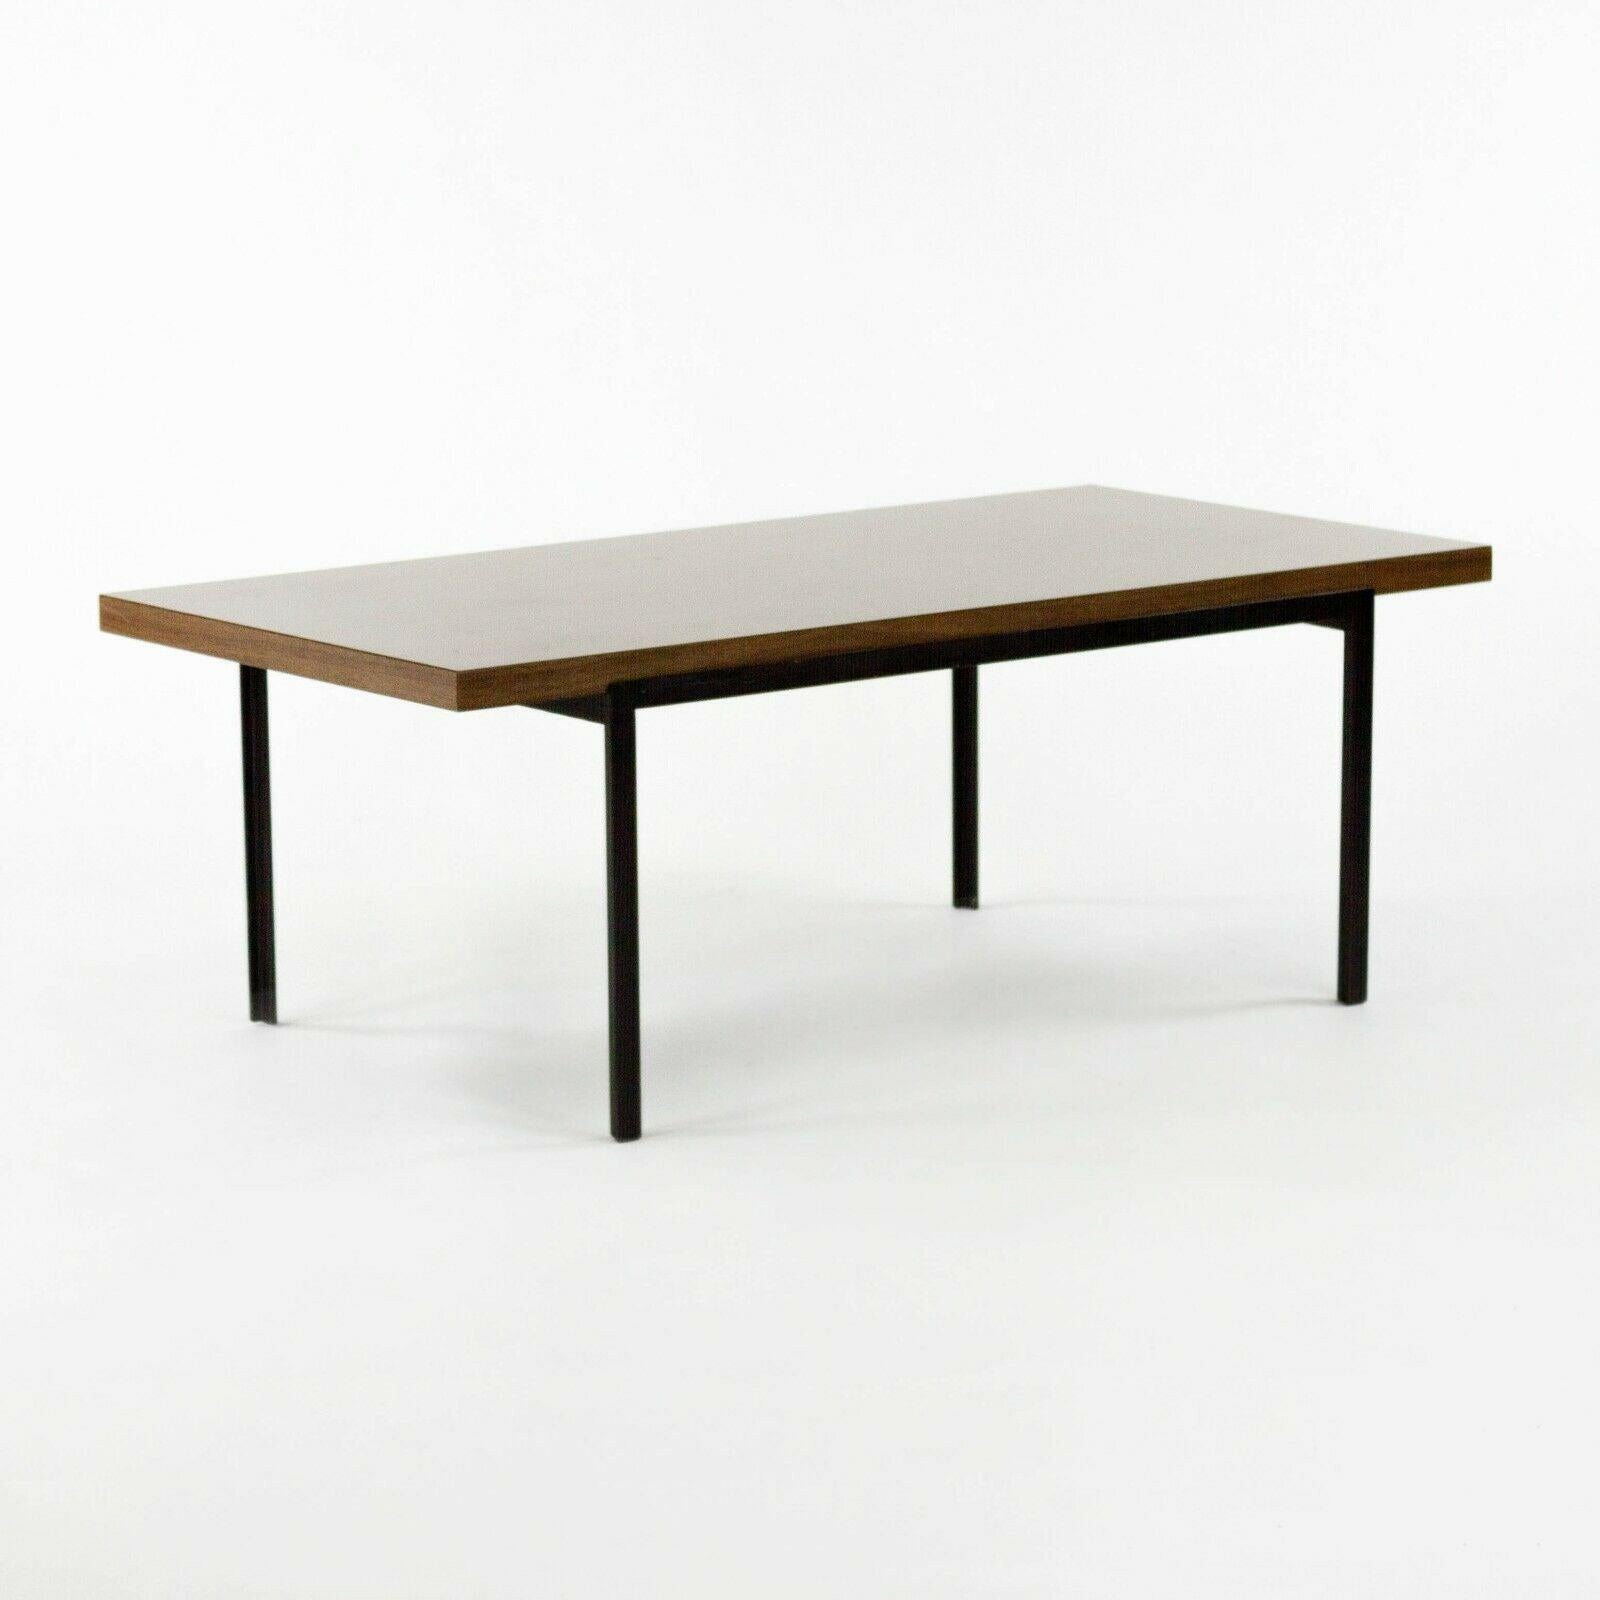 La table basse AT&T est une pièce très rare, produite en série limitée par Knoll Associates. Il s'agit d'un modèle précoce et unique de Florence Knoll, qui est mentionné dans le livre 